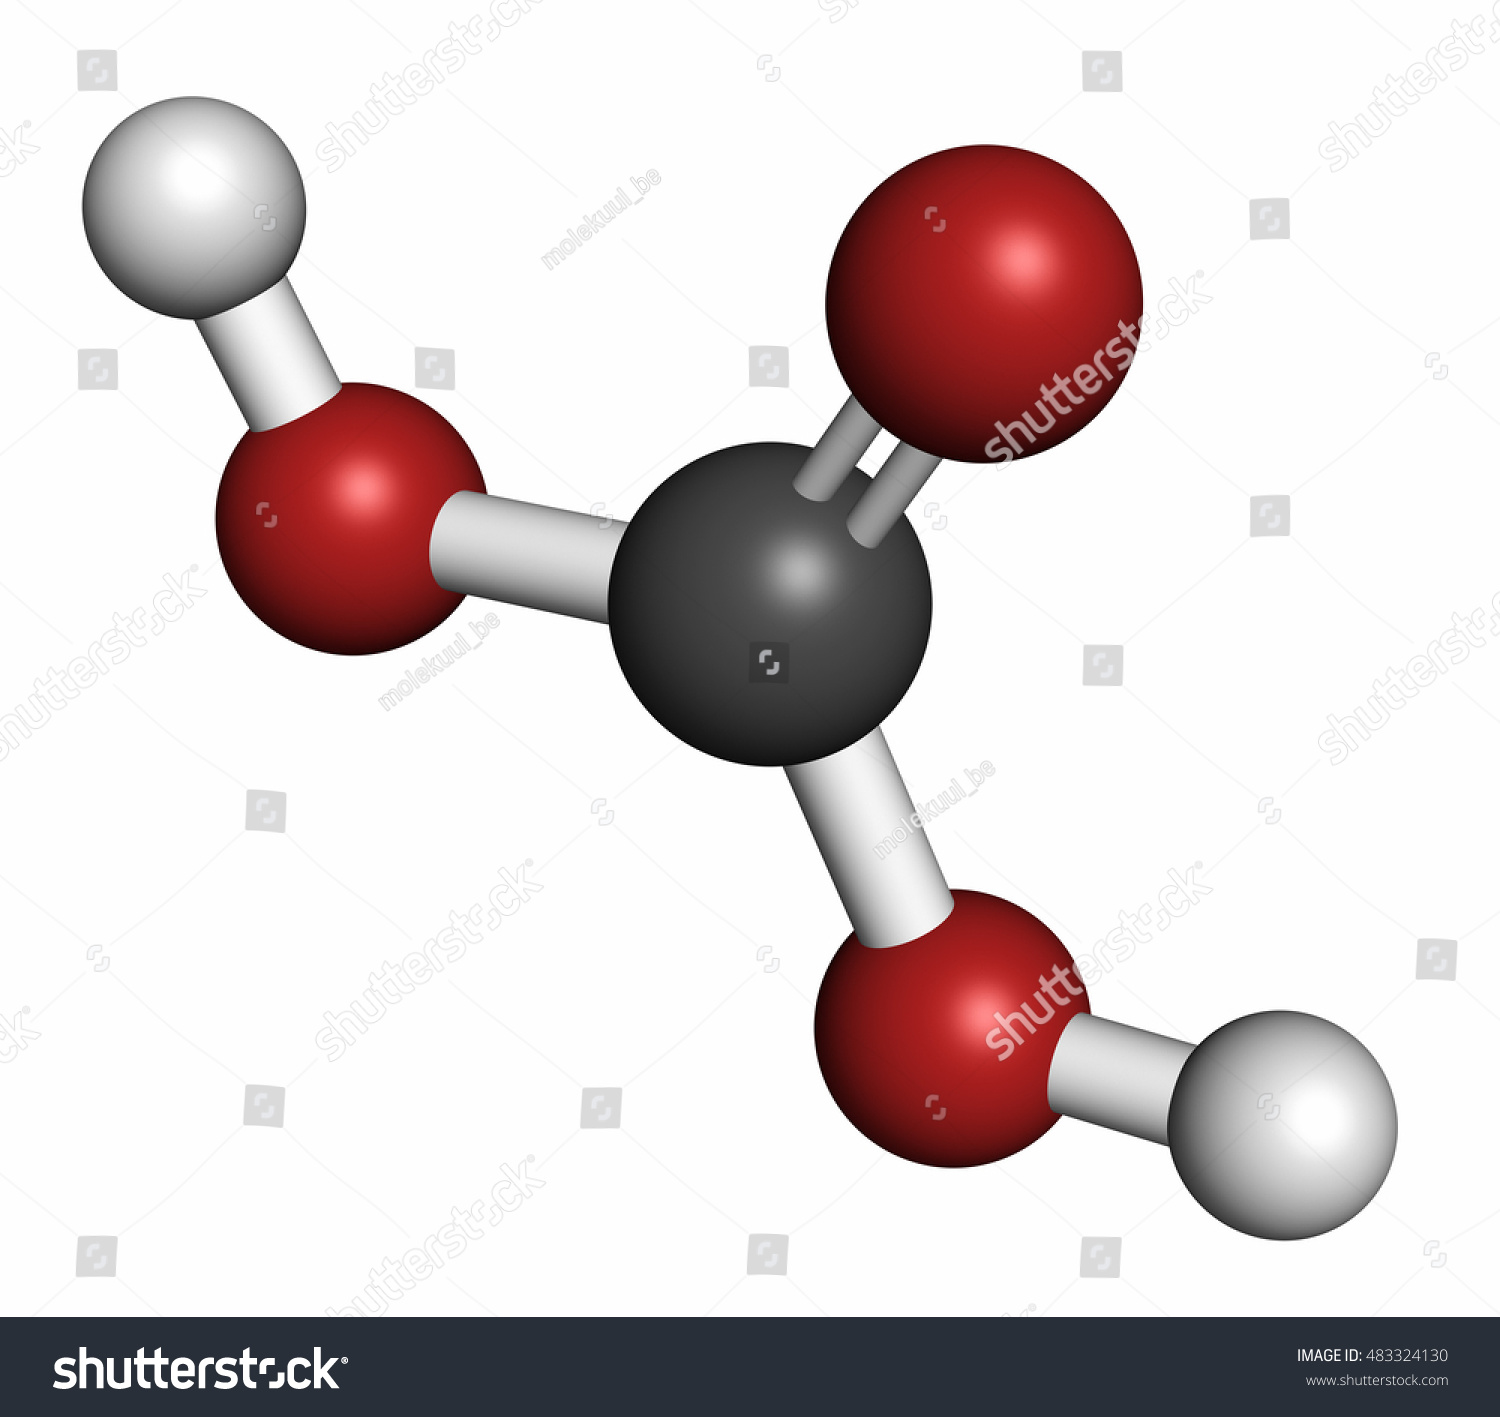 Оксид углерода вода угольная кислота. Серная кислота молекула. Молекула кислоты из пластилина. Модель молекулы углекислого газа. Молекула газировки.